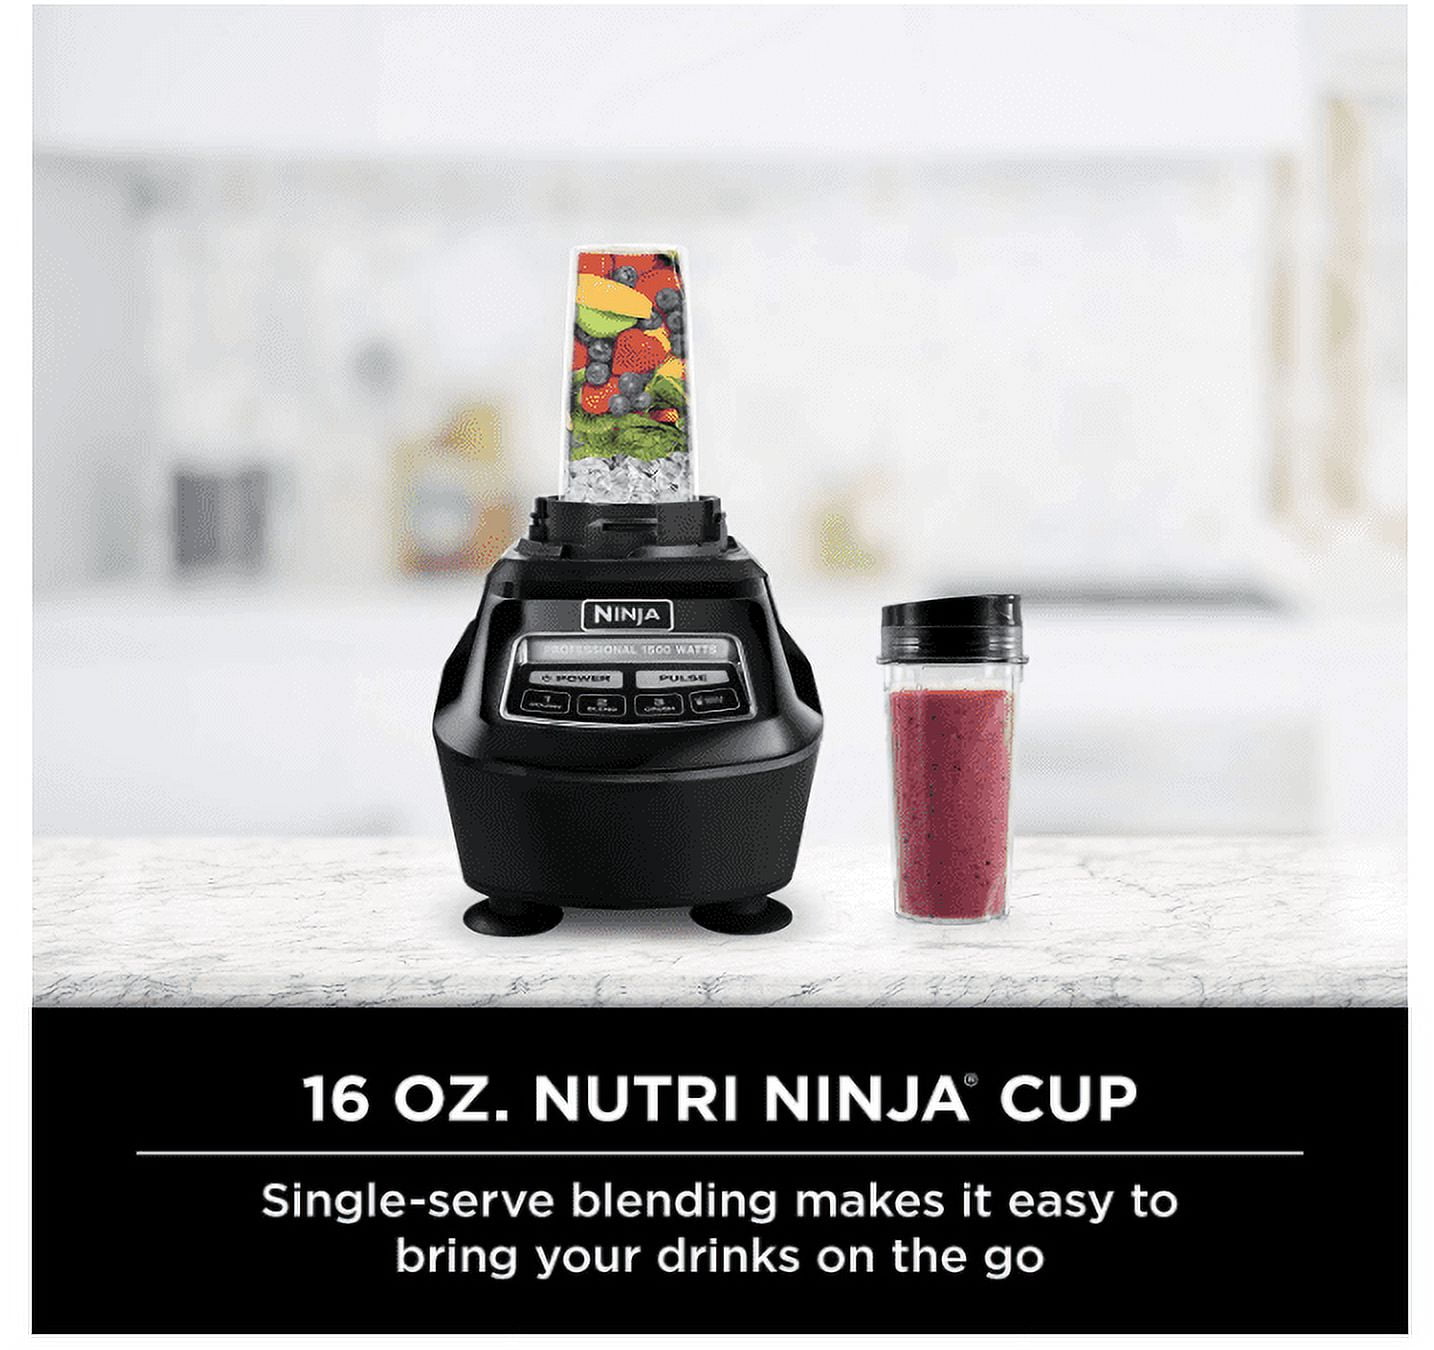 NINJA Mega Kitchen System 72 oz. 5-Speed Black Blender and Food